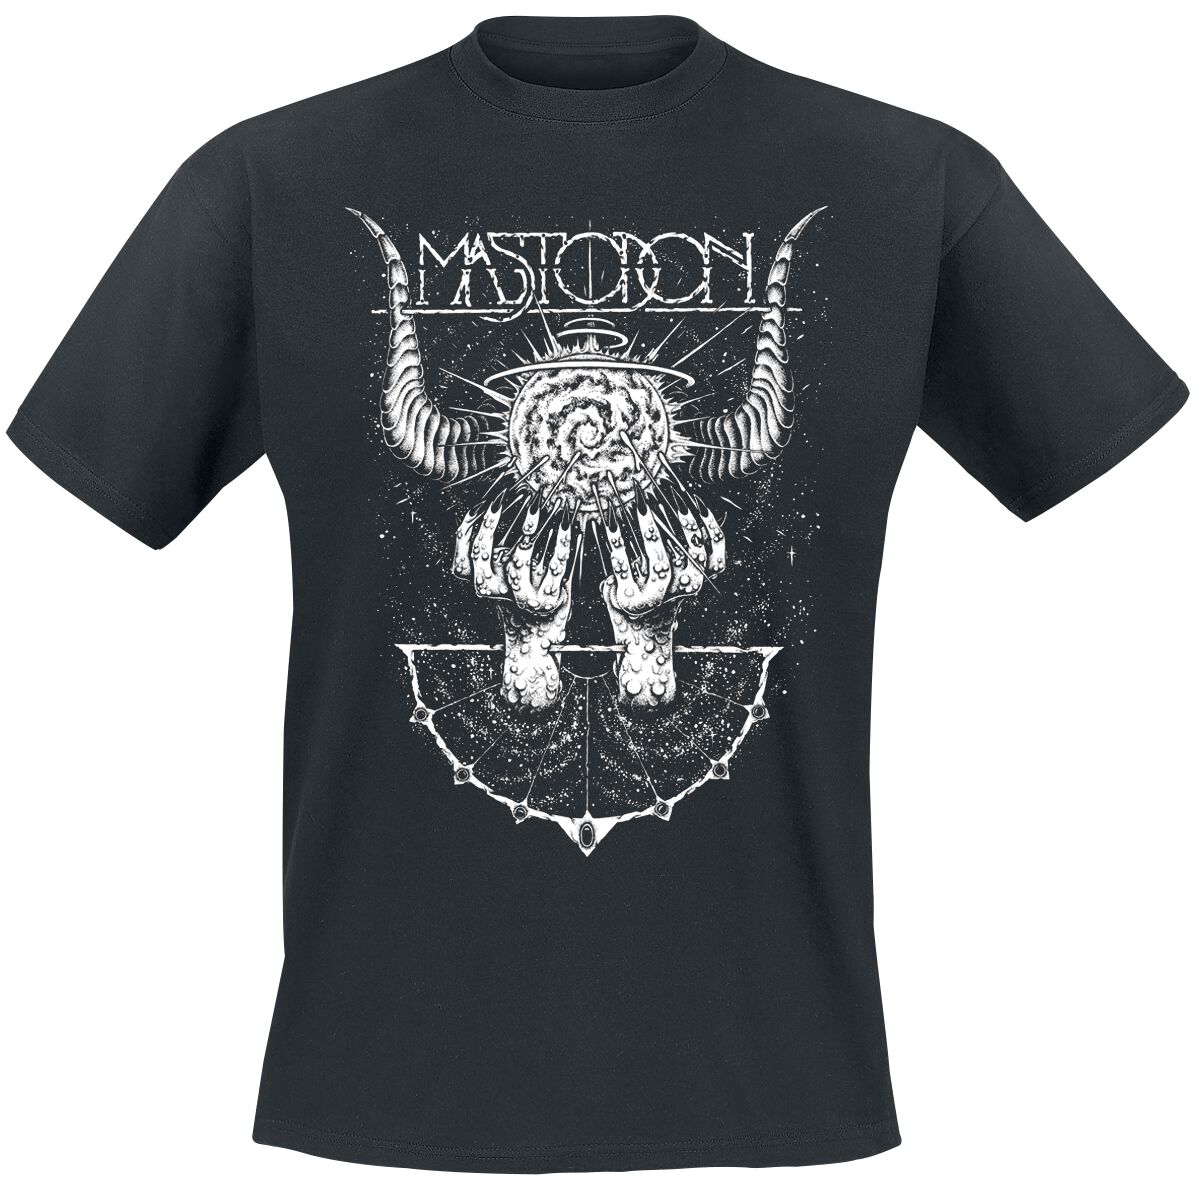 Mastodon T-Shirt - Horned Cosmos - S bis 4XL - für Männer - Größe 4XL - schwarz  - Lizenziertes Merchandise!